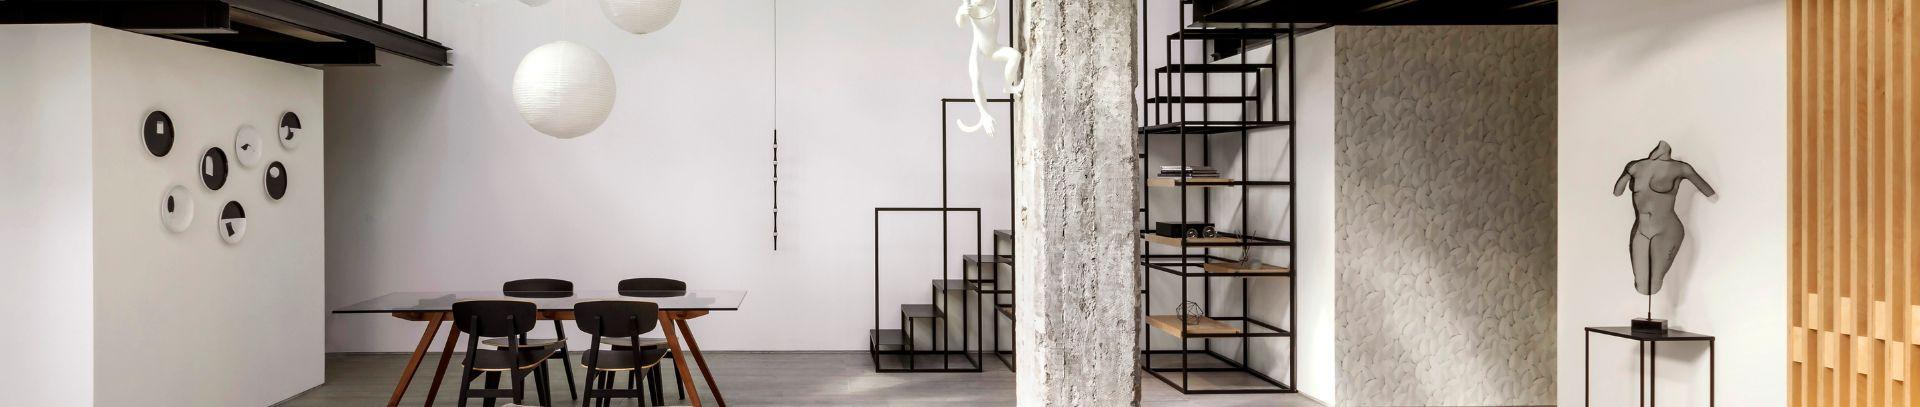 Un moderno loft black e white rivestito con piastrelle in gres porcellanato | Casalgrande Padana